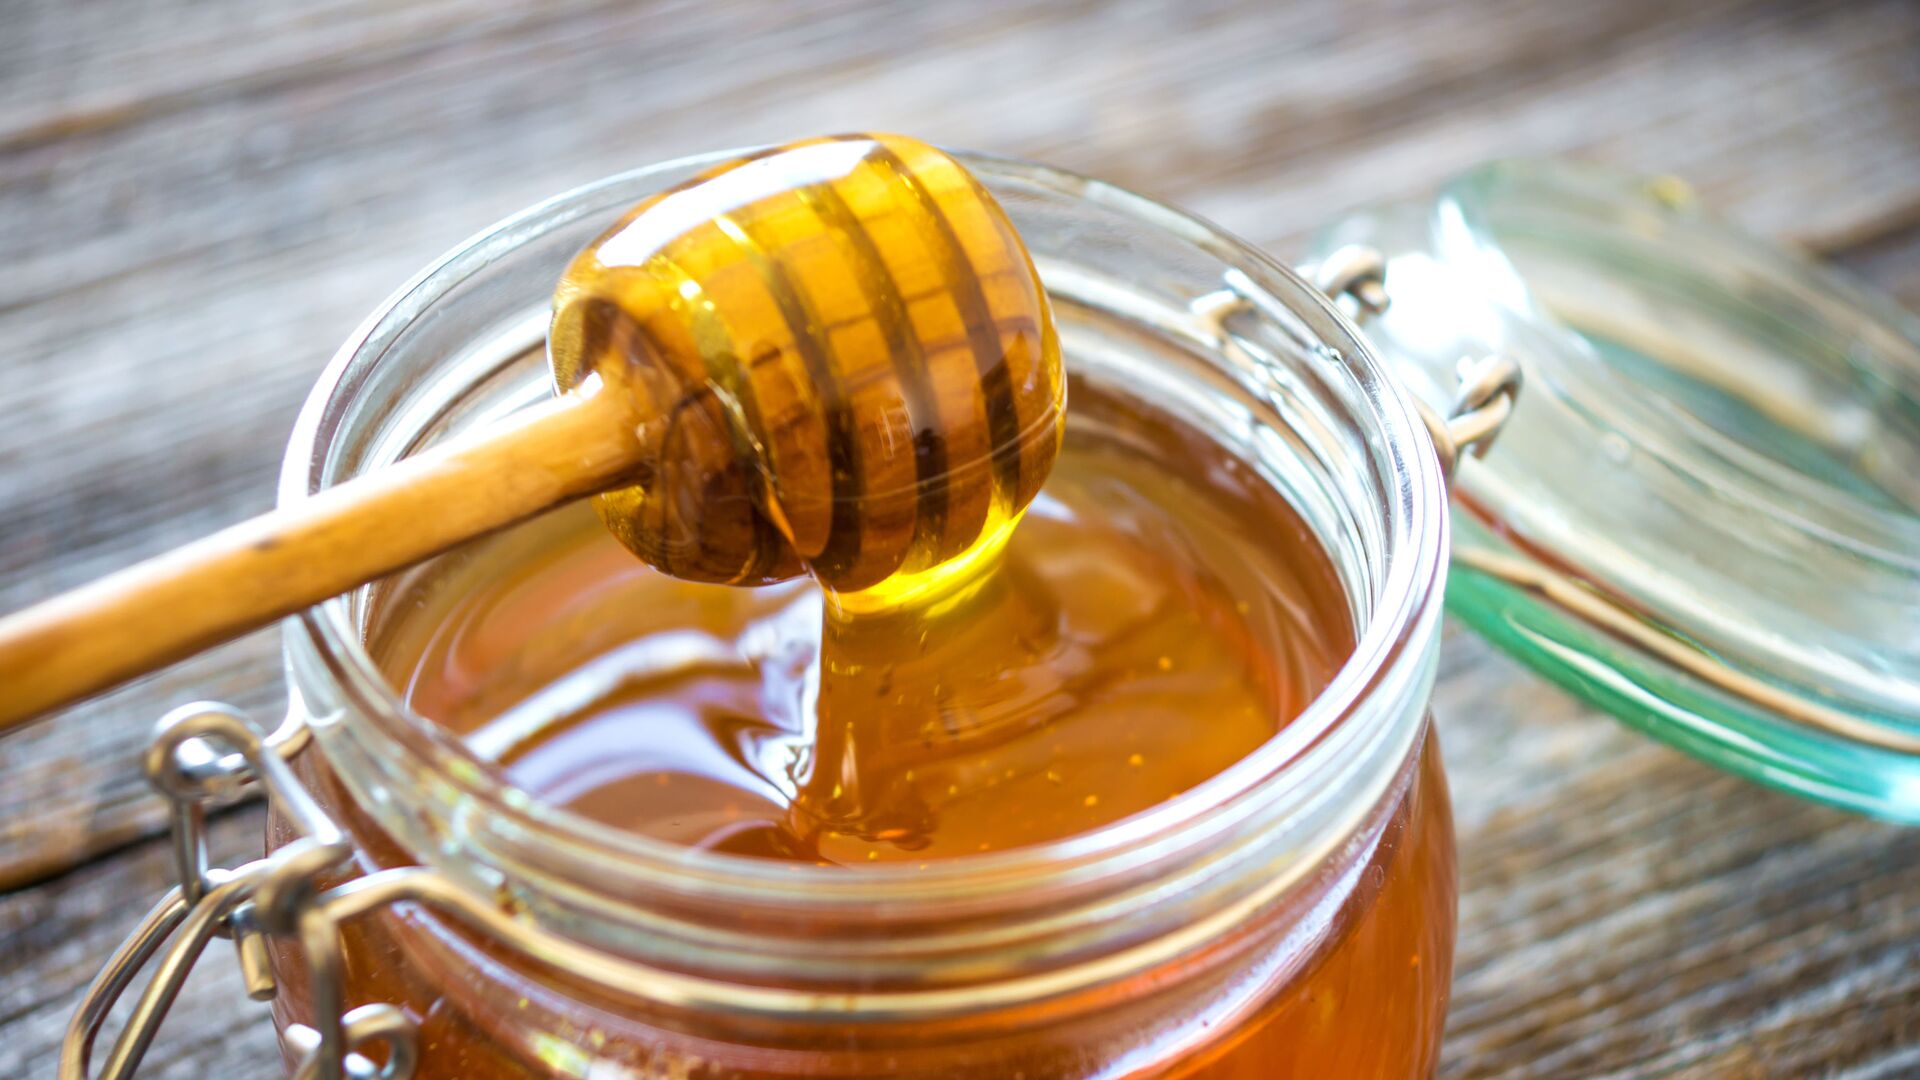  تاریخچه ی عسل طبیعی